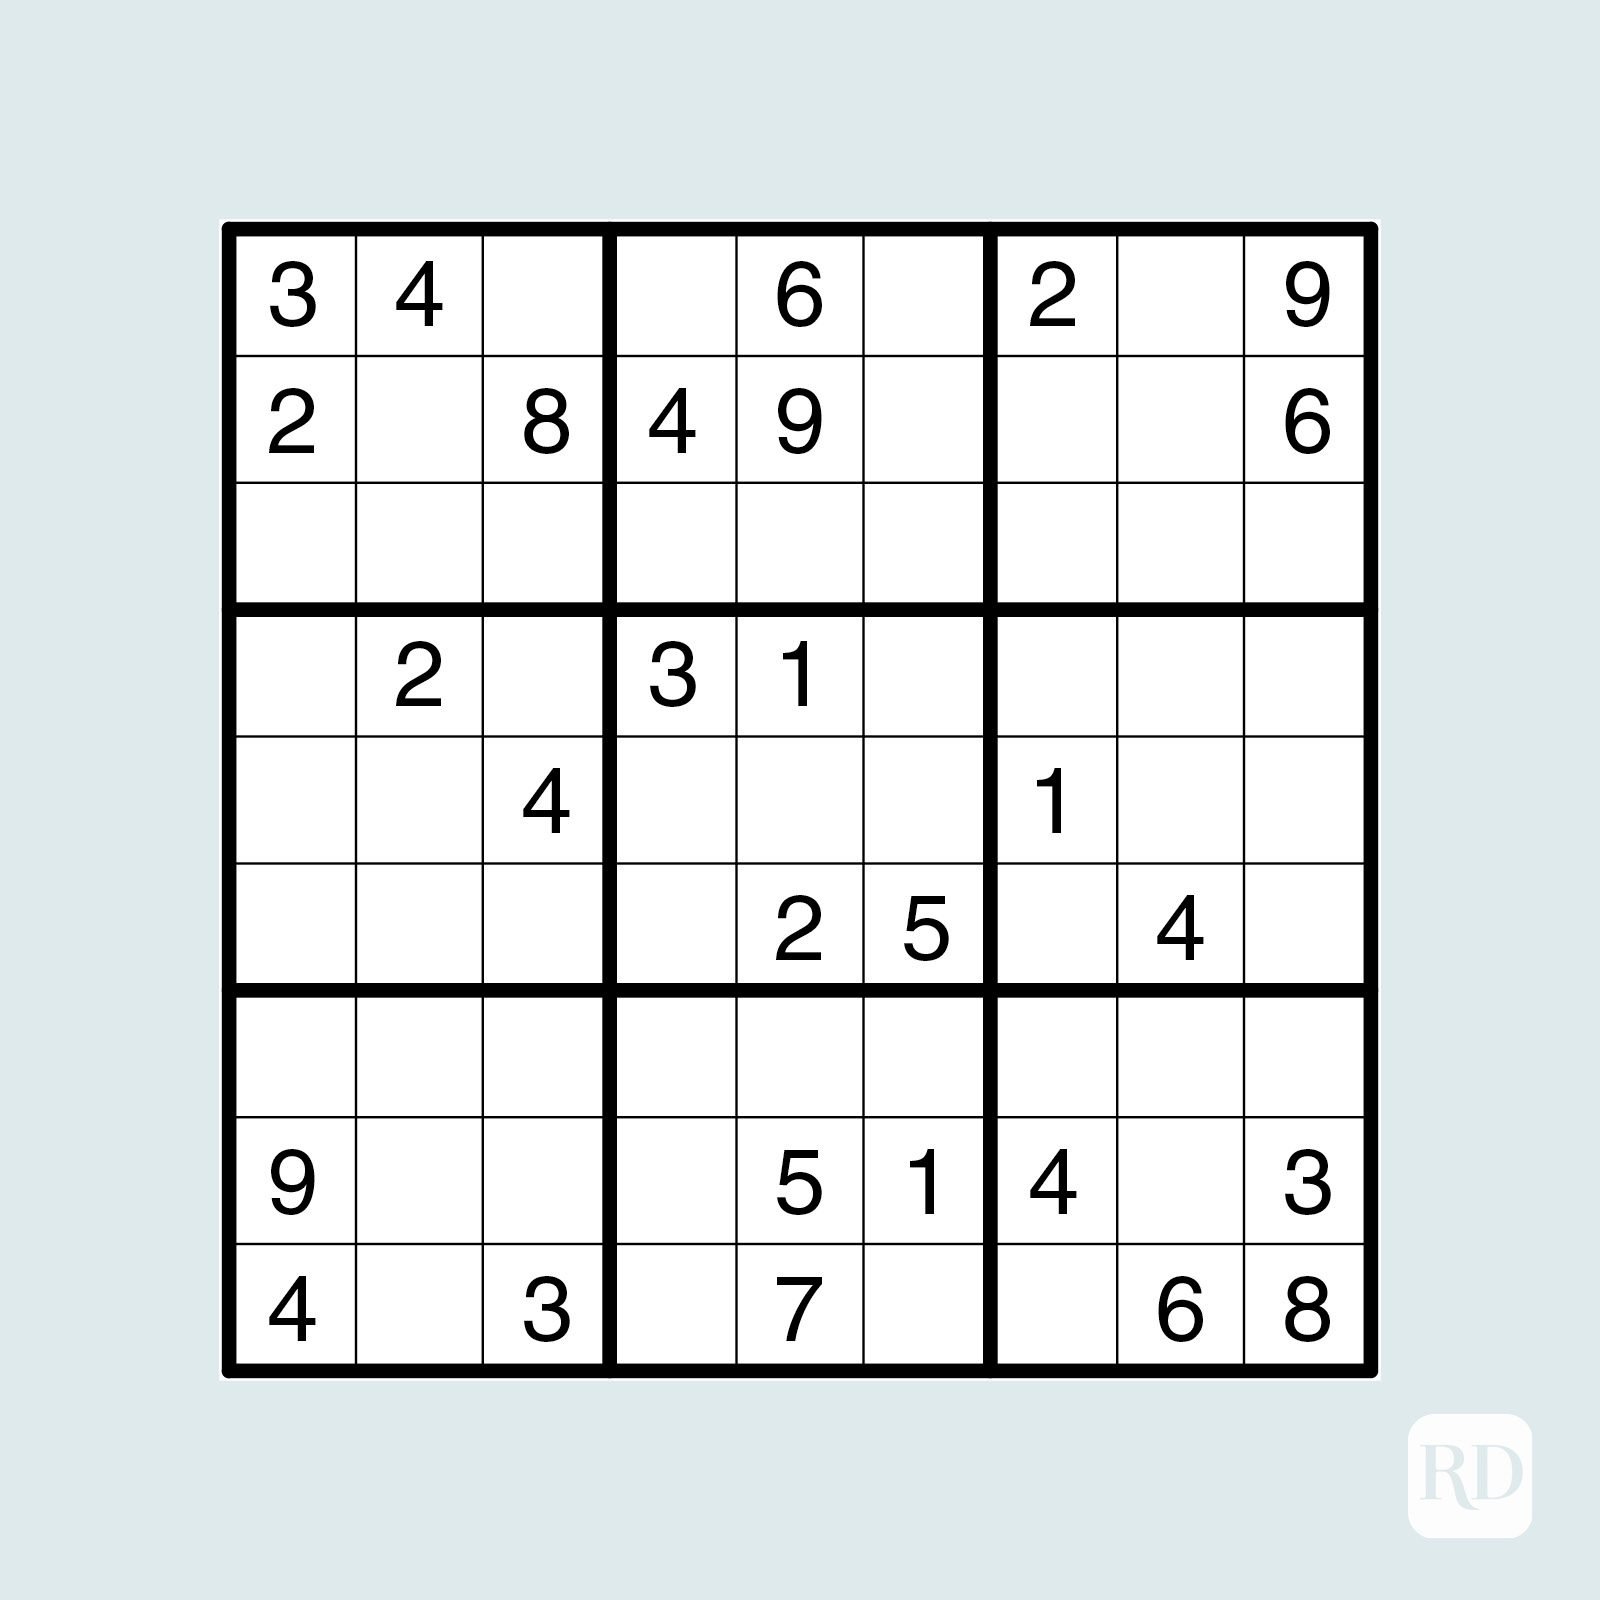 Sudoku.com